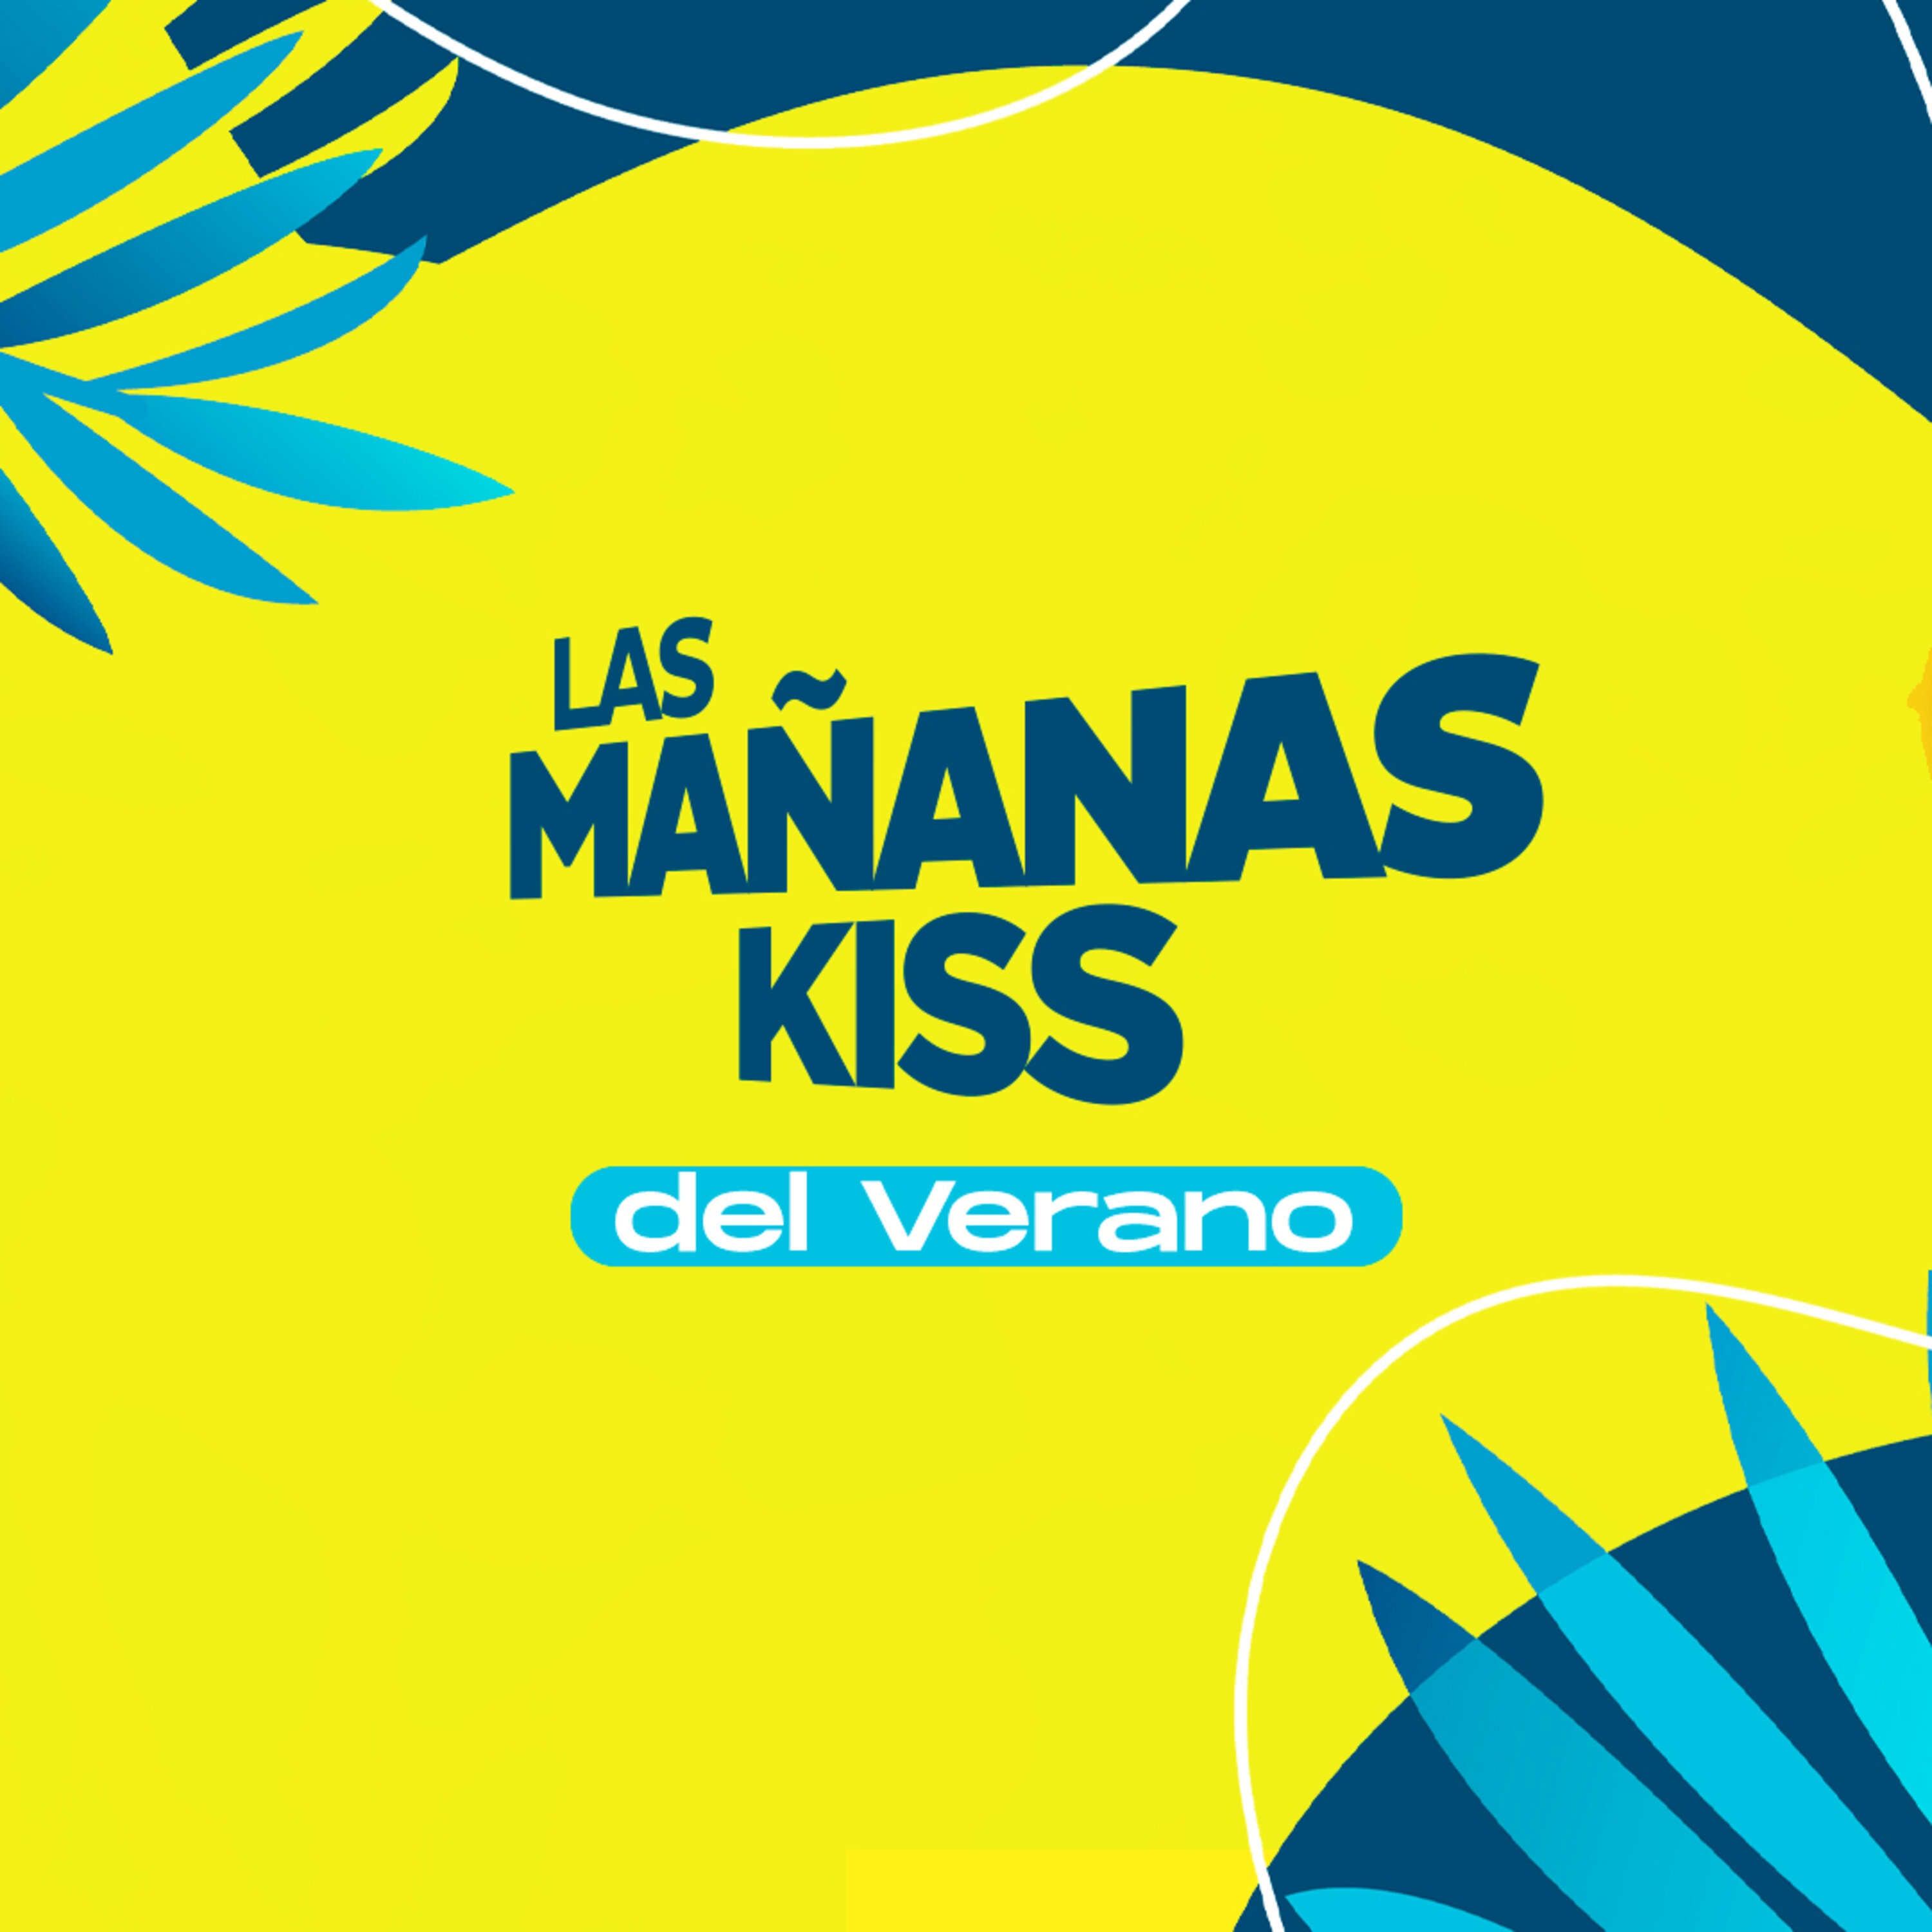 Las Mañanas KISS del Verano (01/08/2022 - 07-08h)